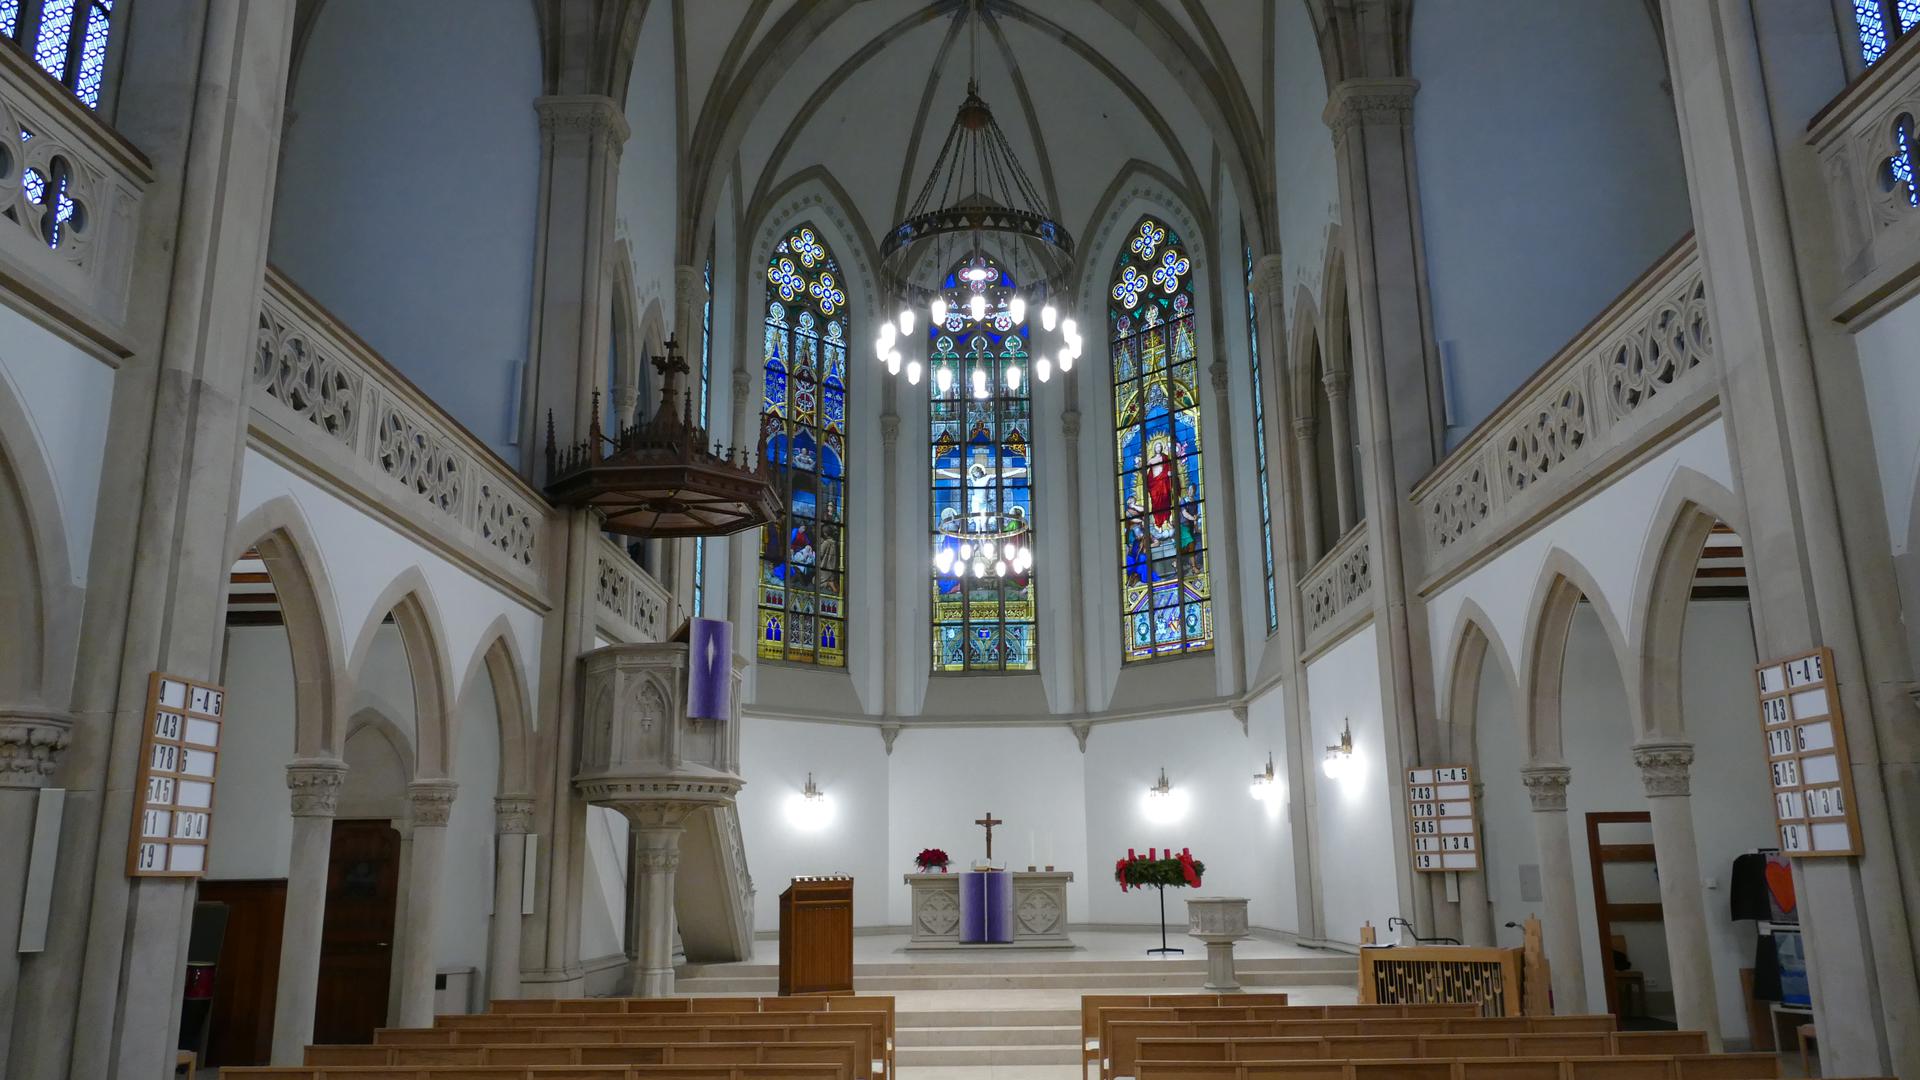 x
Baden-Baden
Januar 2017
Evangelische Stadtkirche